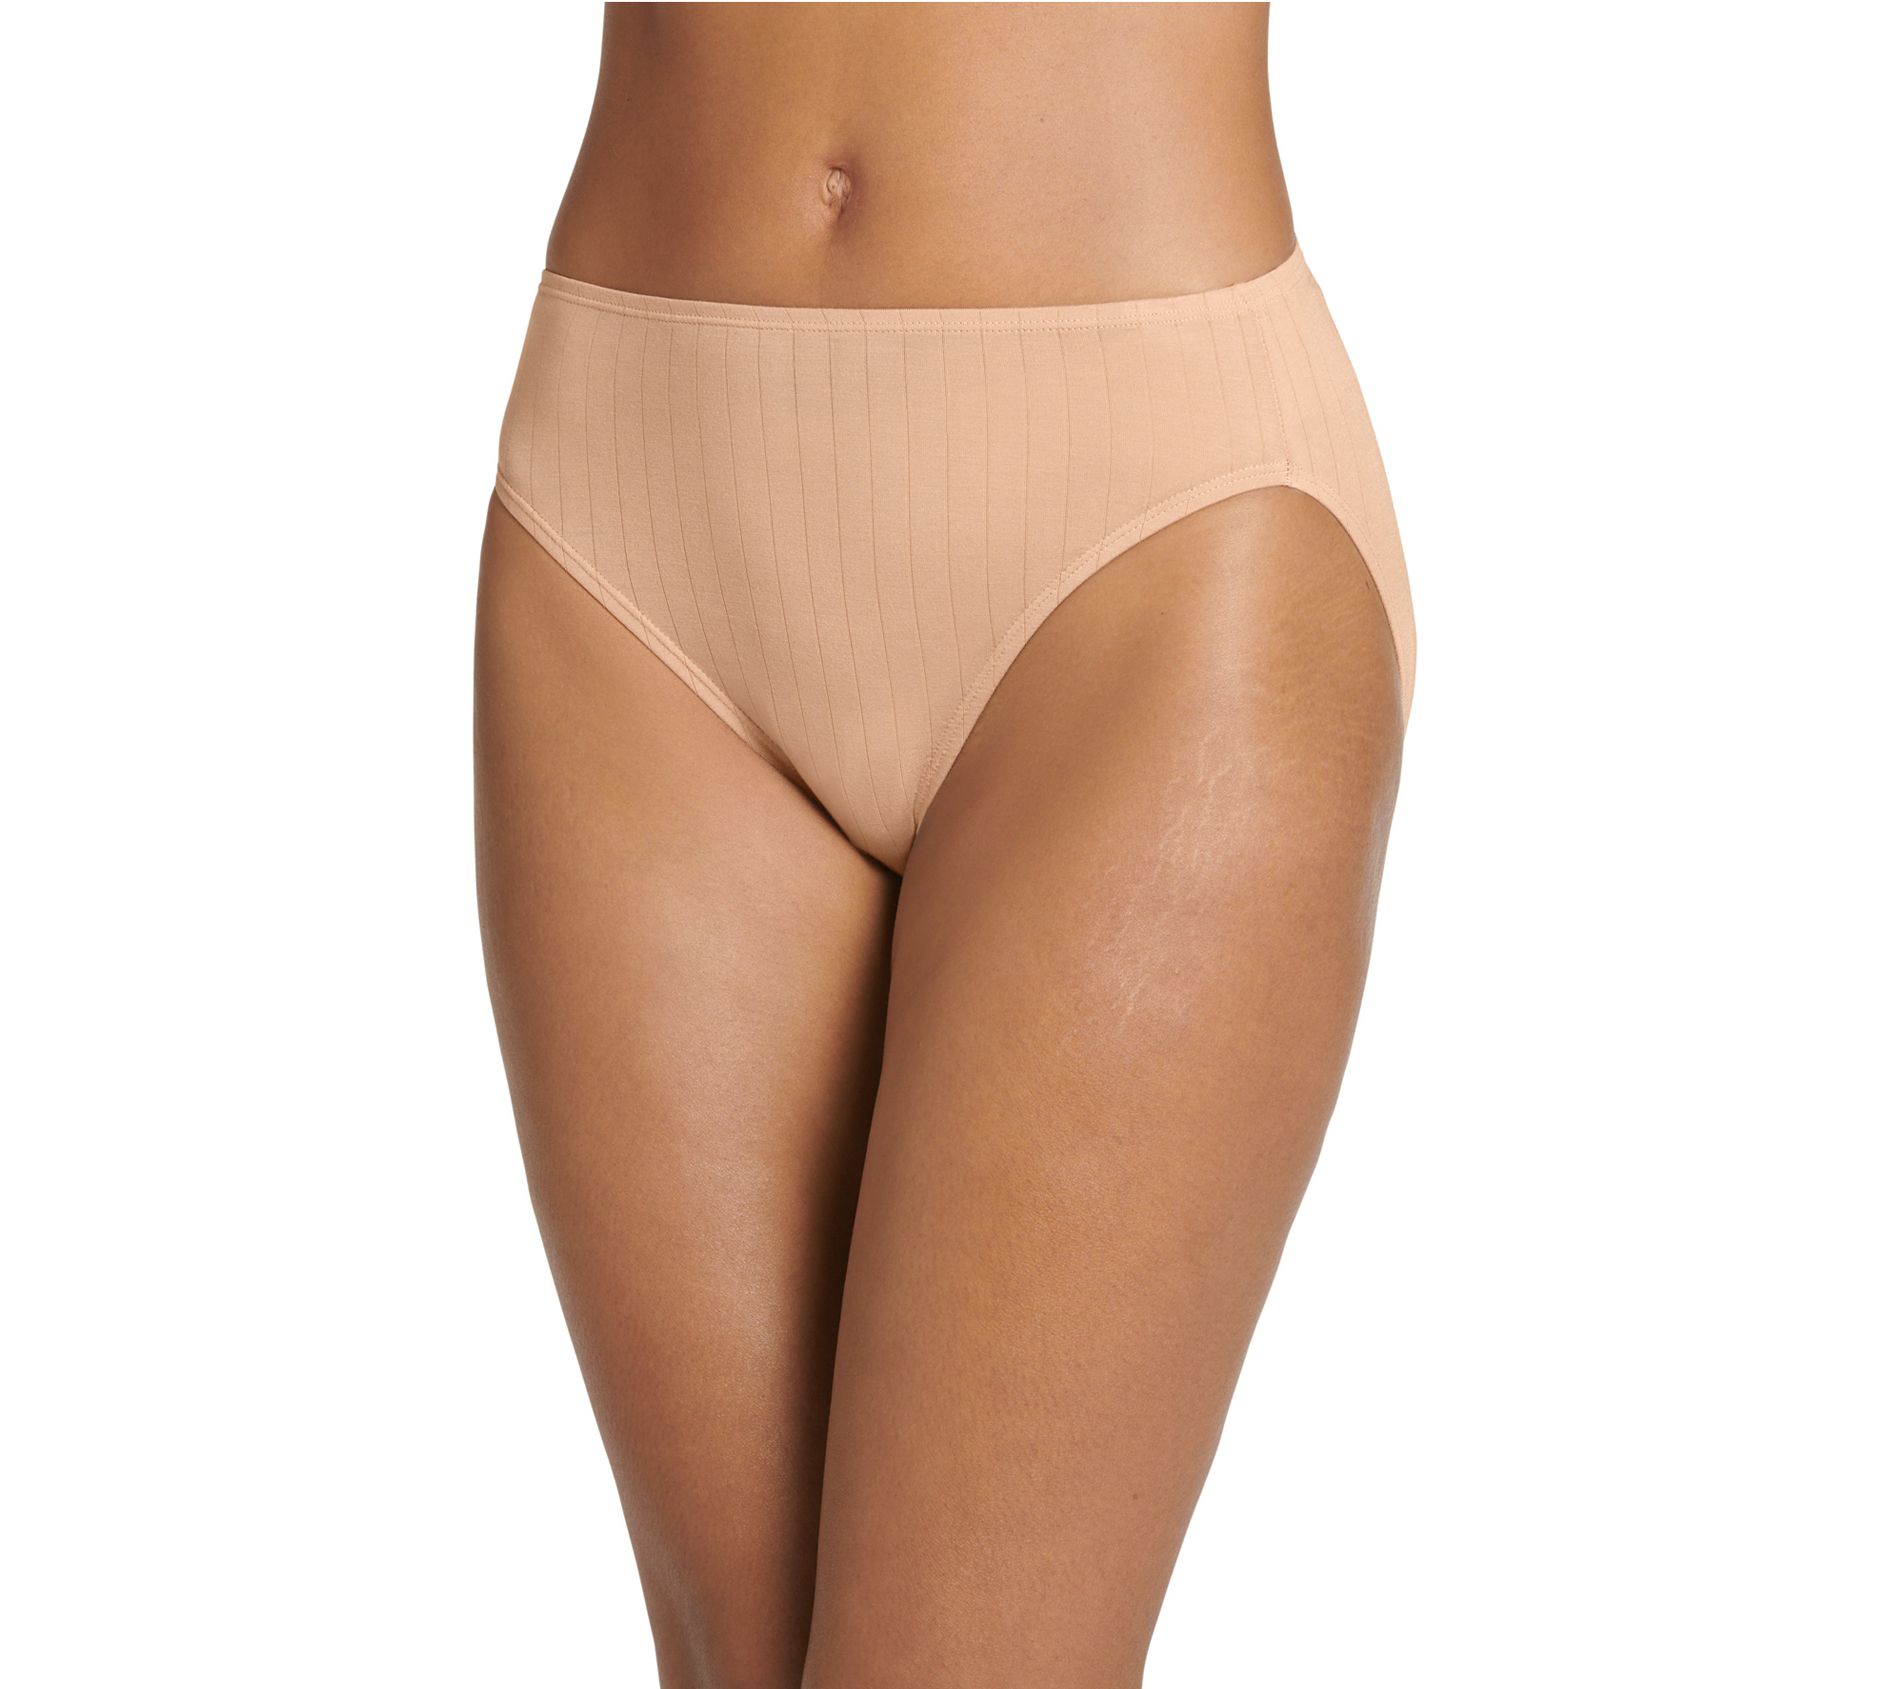 Women's Underwear Size 7 - Intimates 